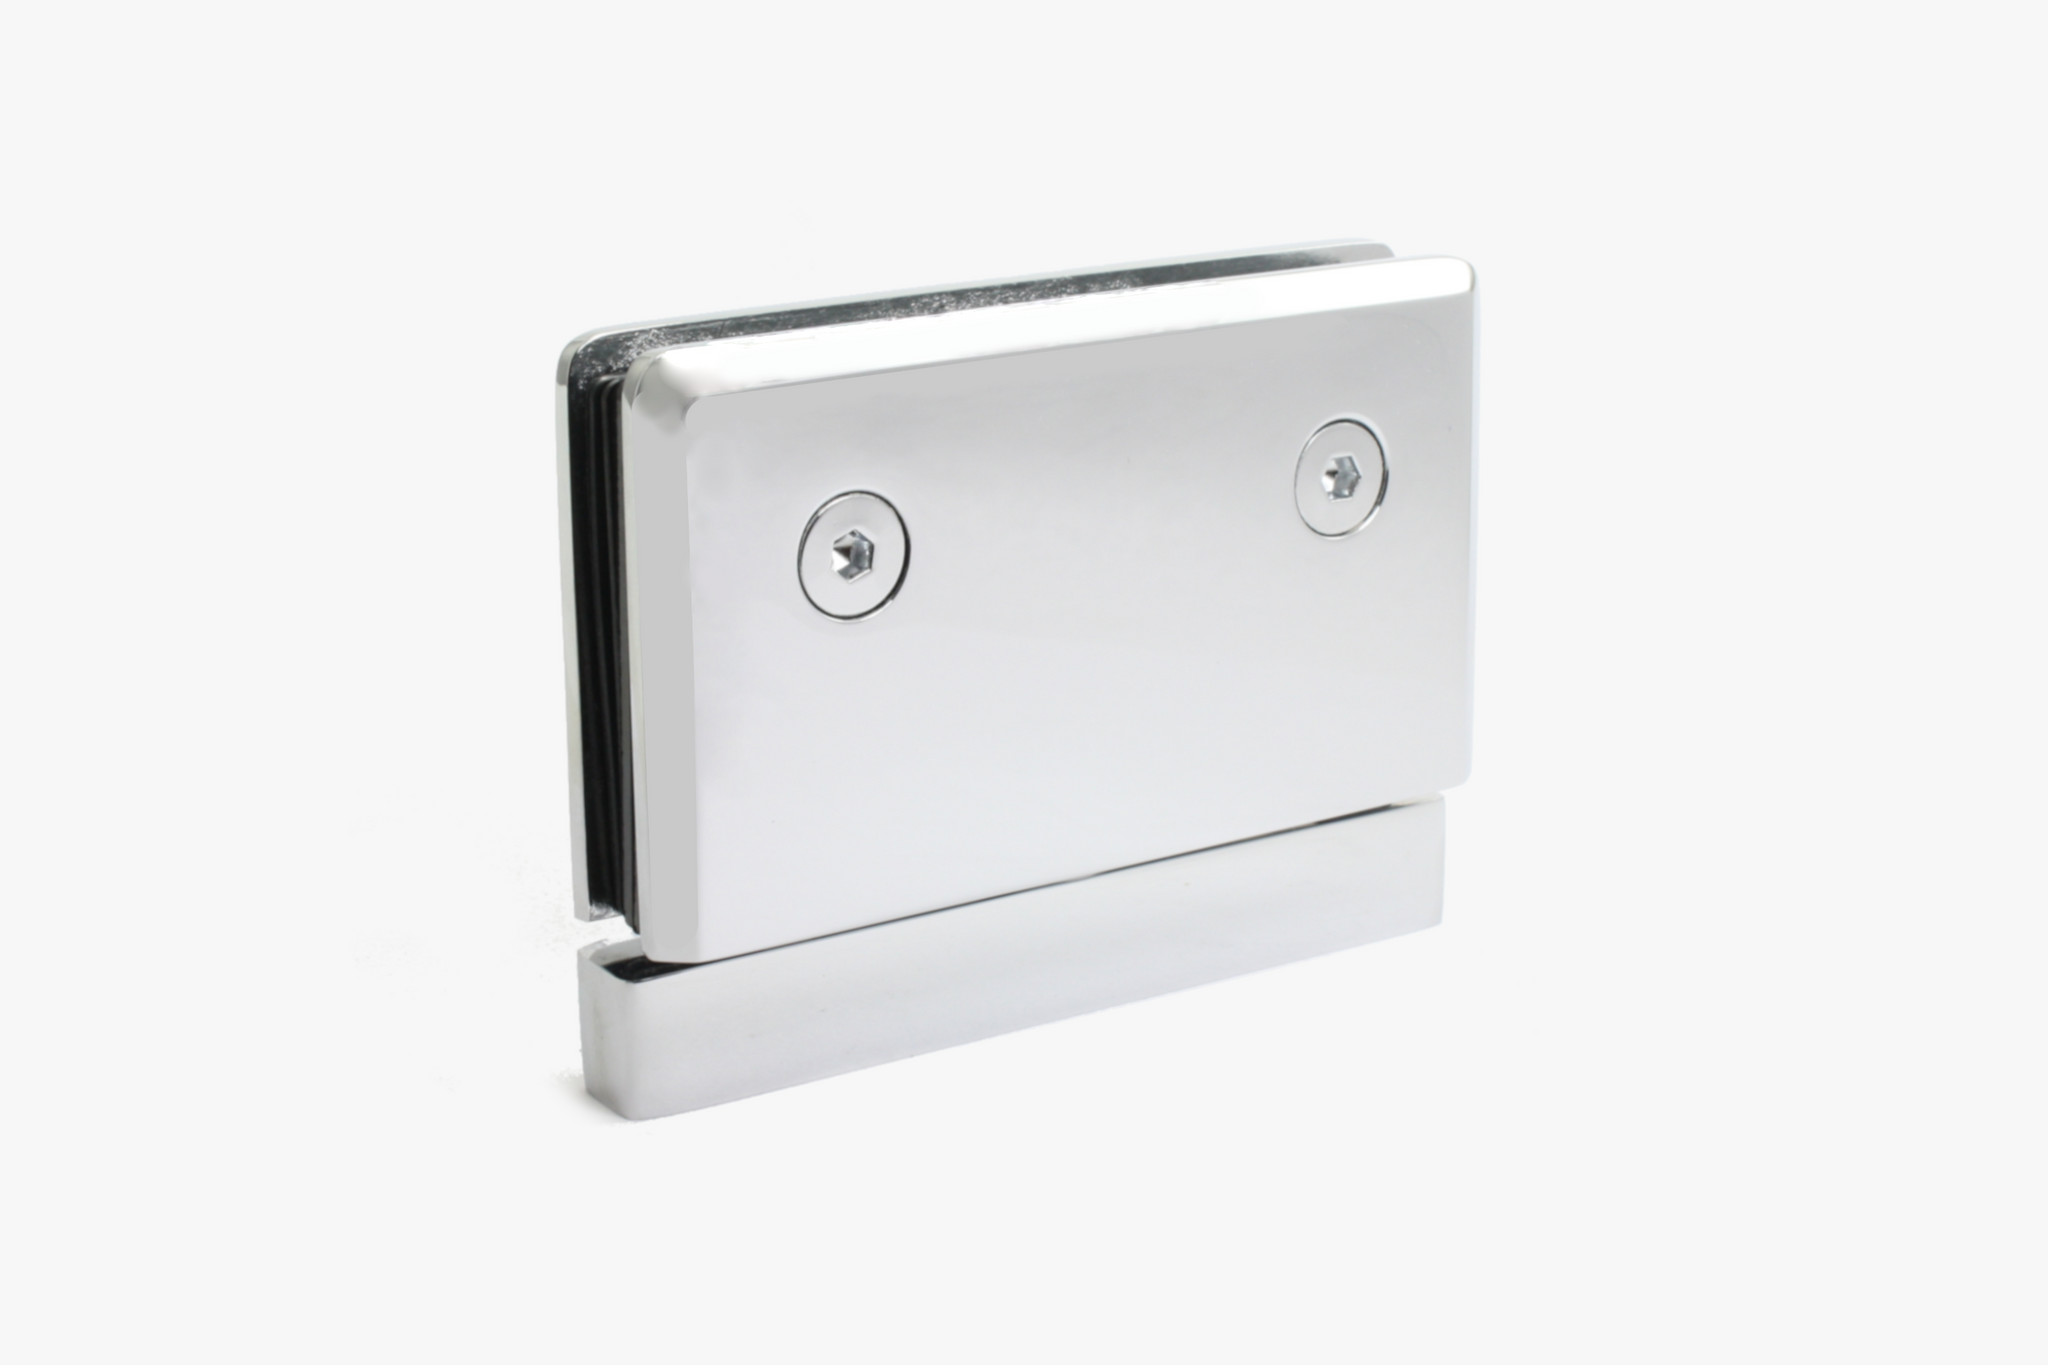 Heavy duty bevelled edge header mount pivot hinge for shower doors (Prima Style)